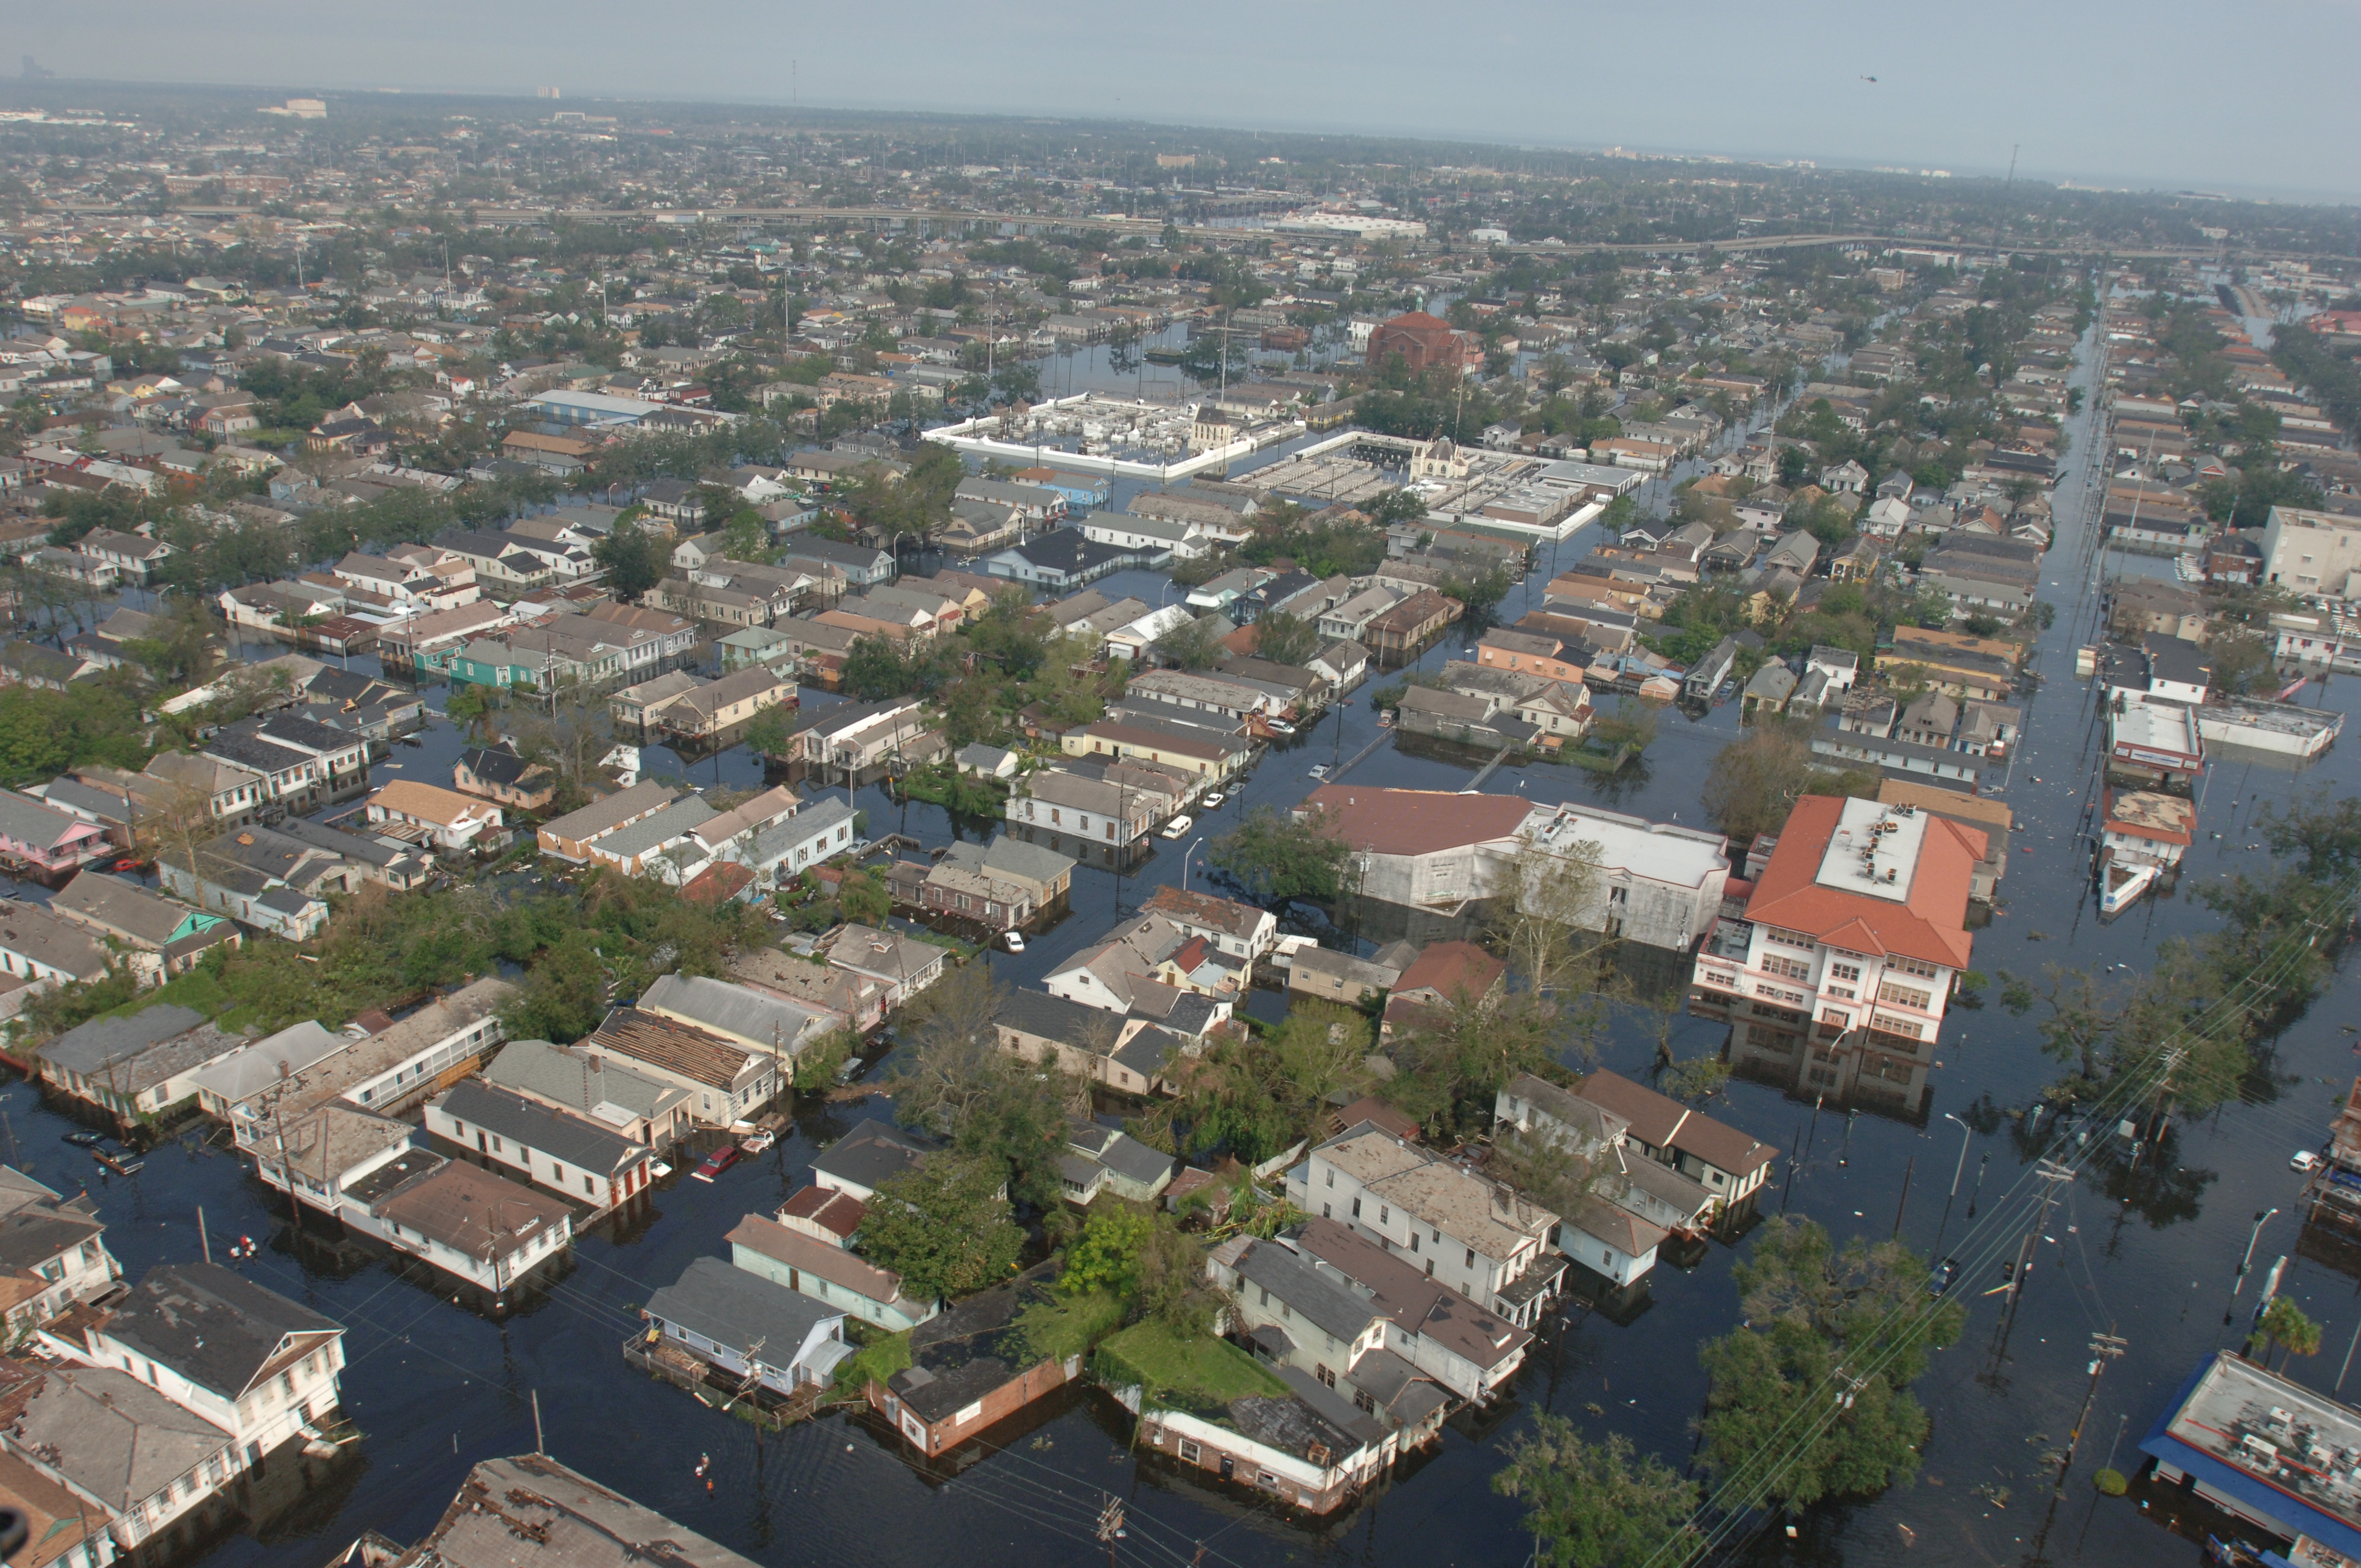 FEMA - 18179 - Photograph by Jocelyn Augustino taken on 08-30-2005 in Louisiana